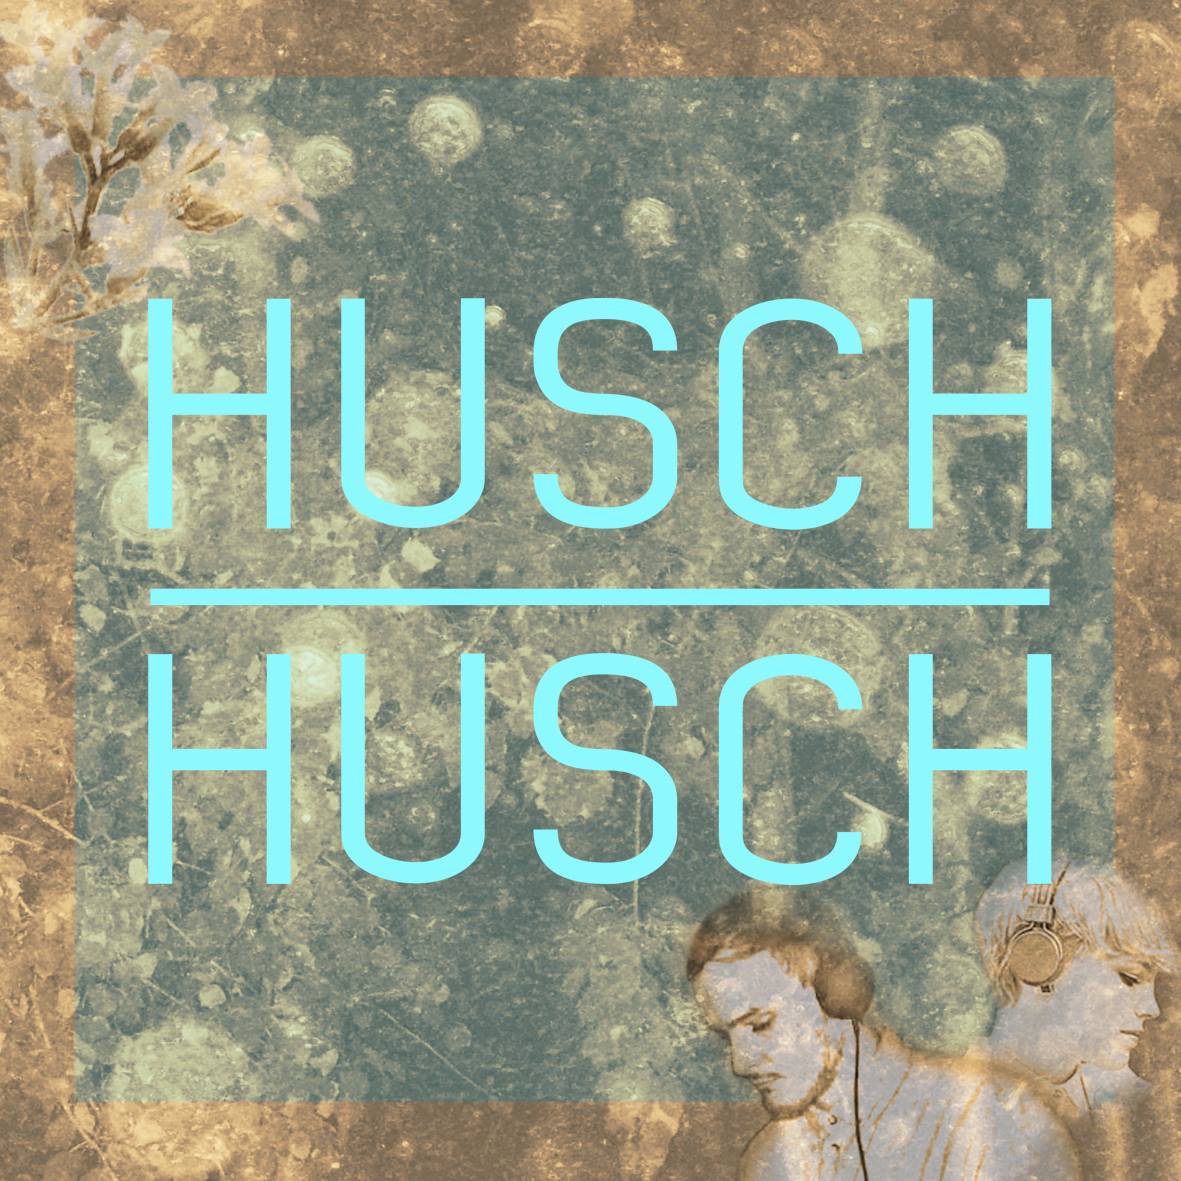 huschhusch